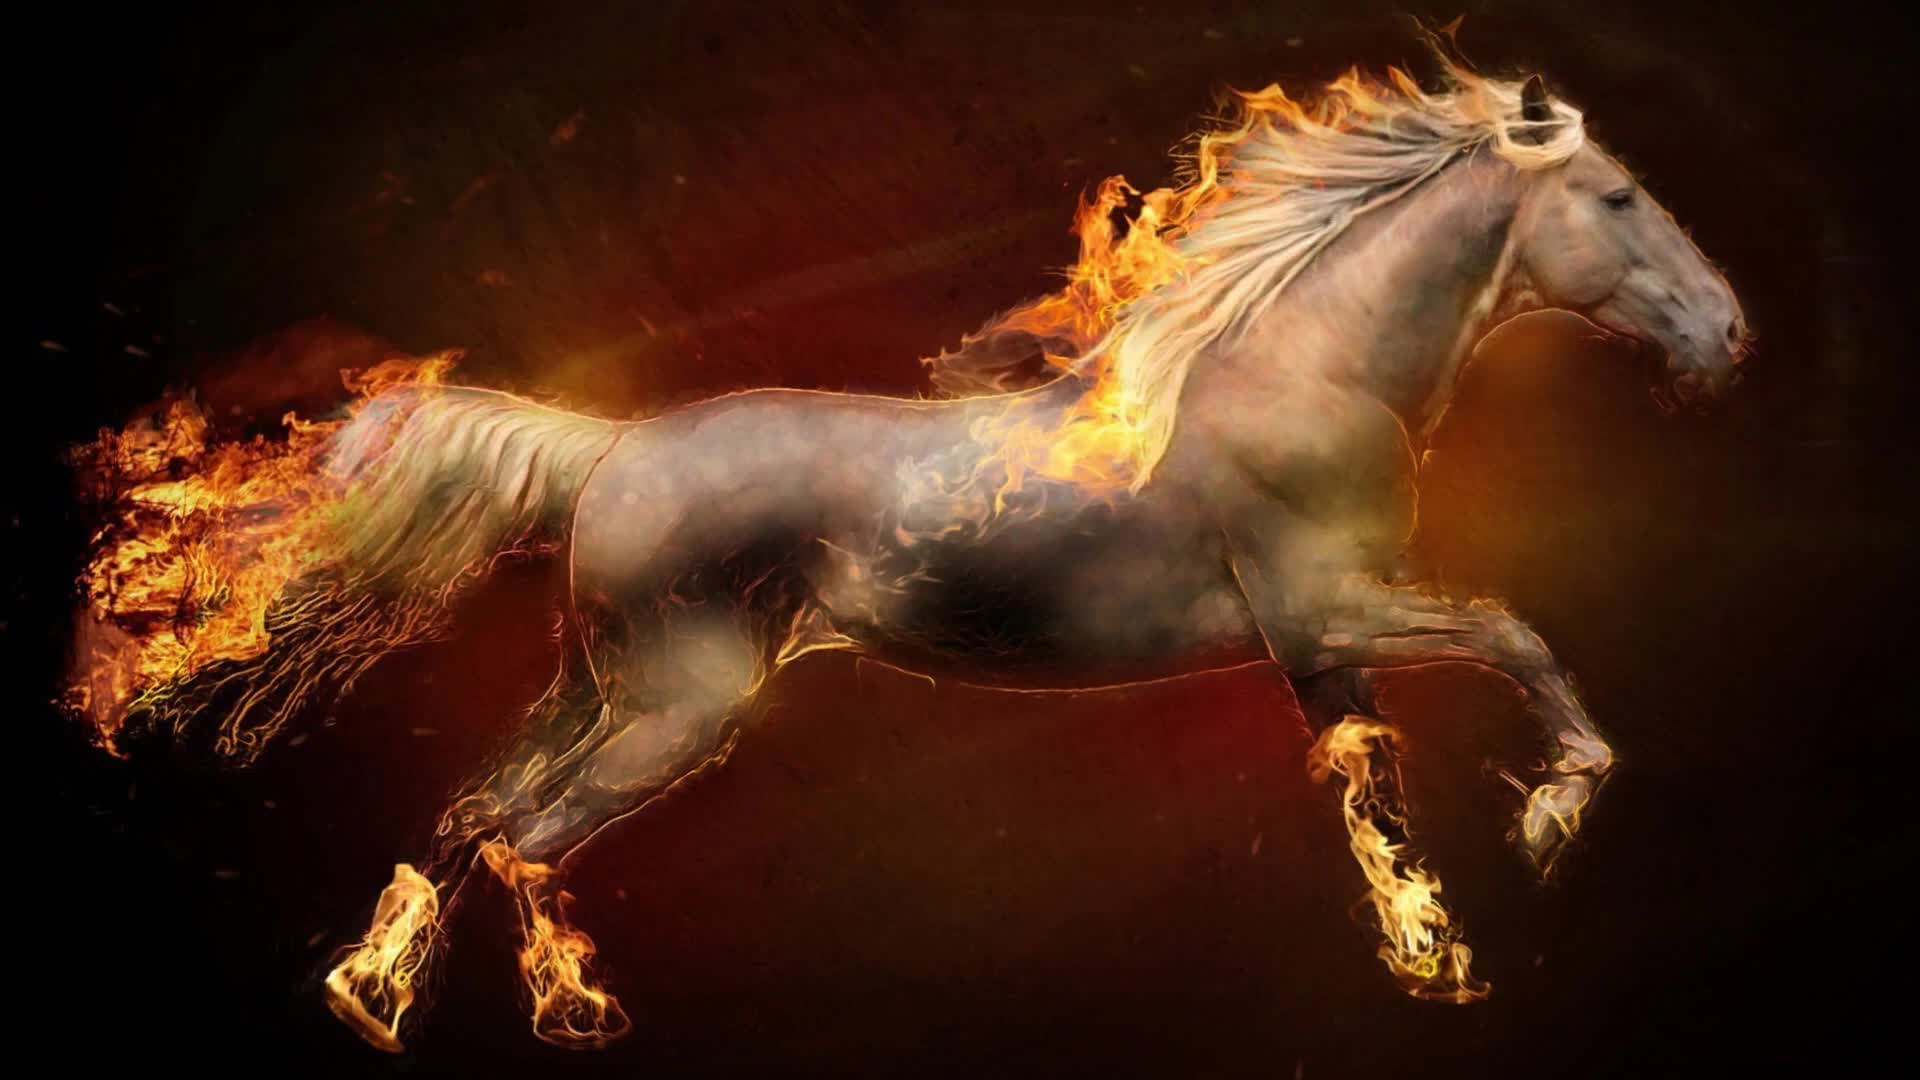 Running Fire Horse Artwork Live Wallpaper - Fire Horses Wallpaper Hd - HD Wallpaper 